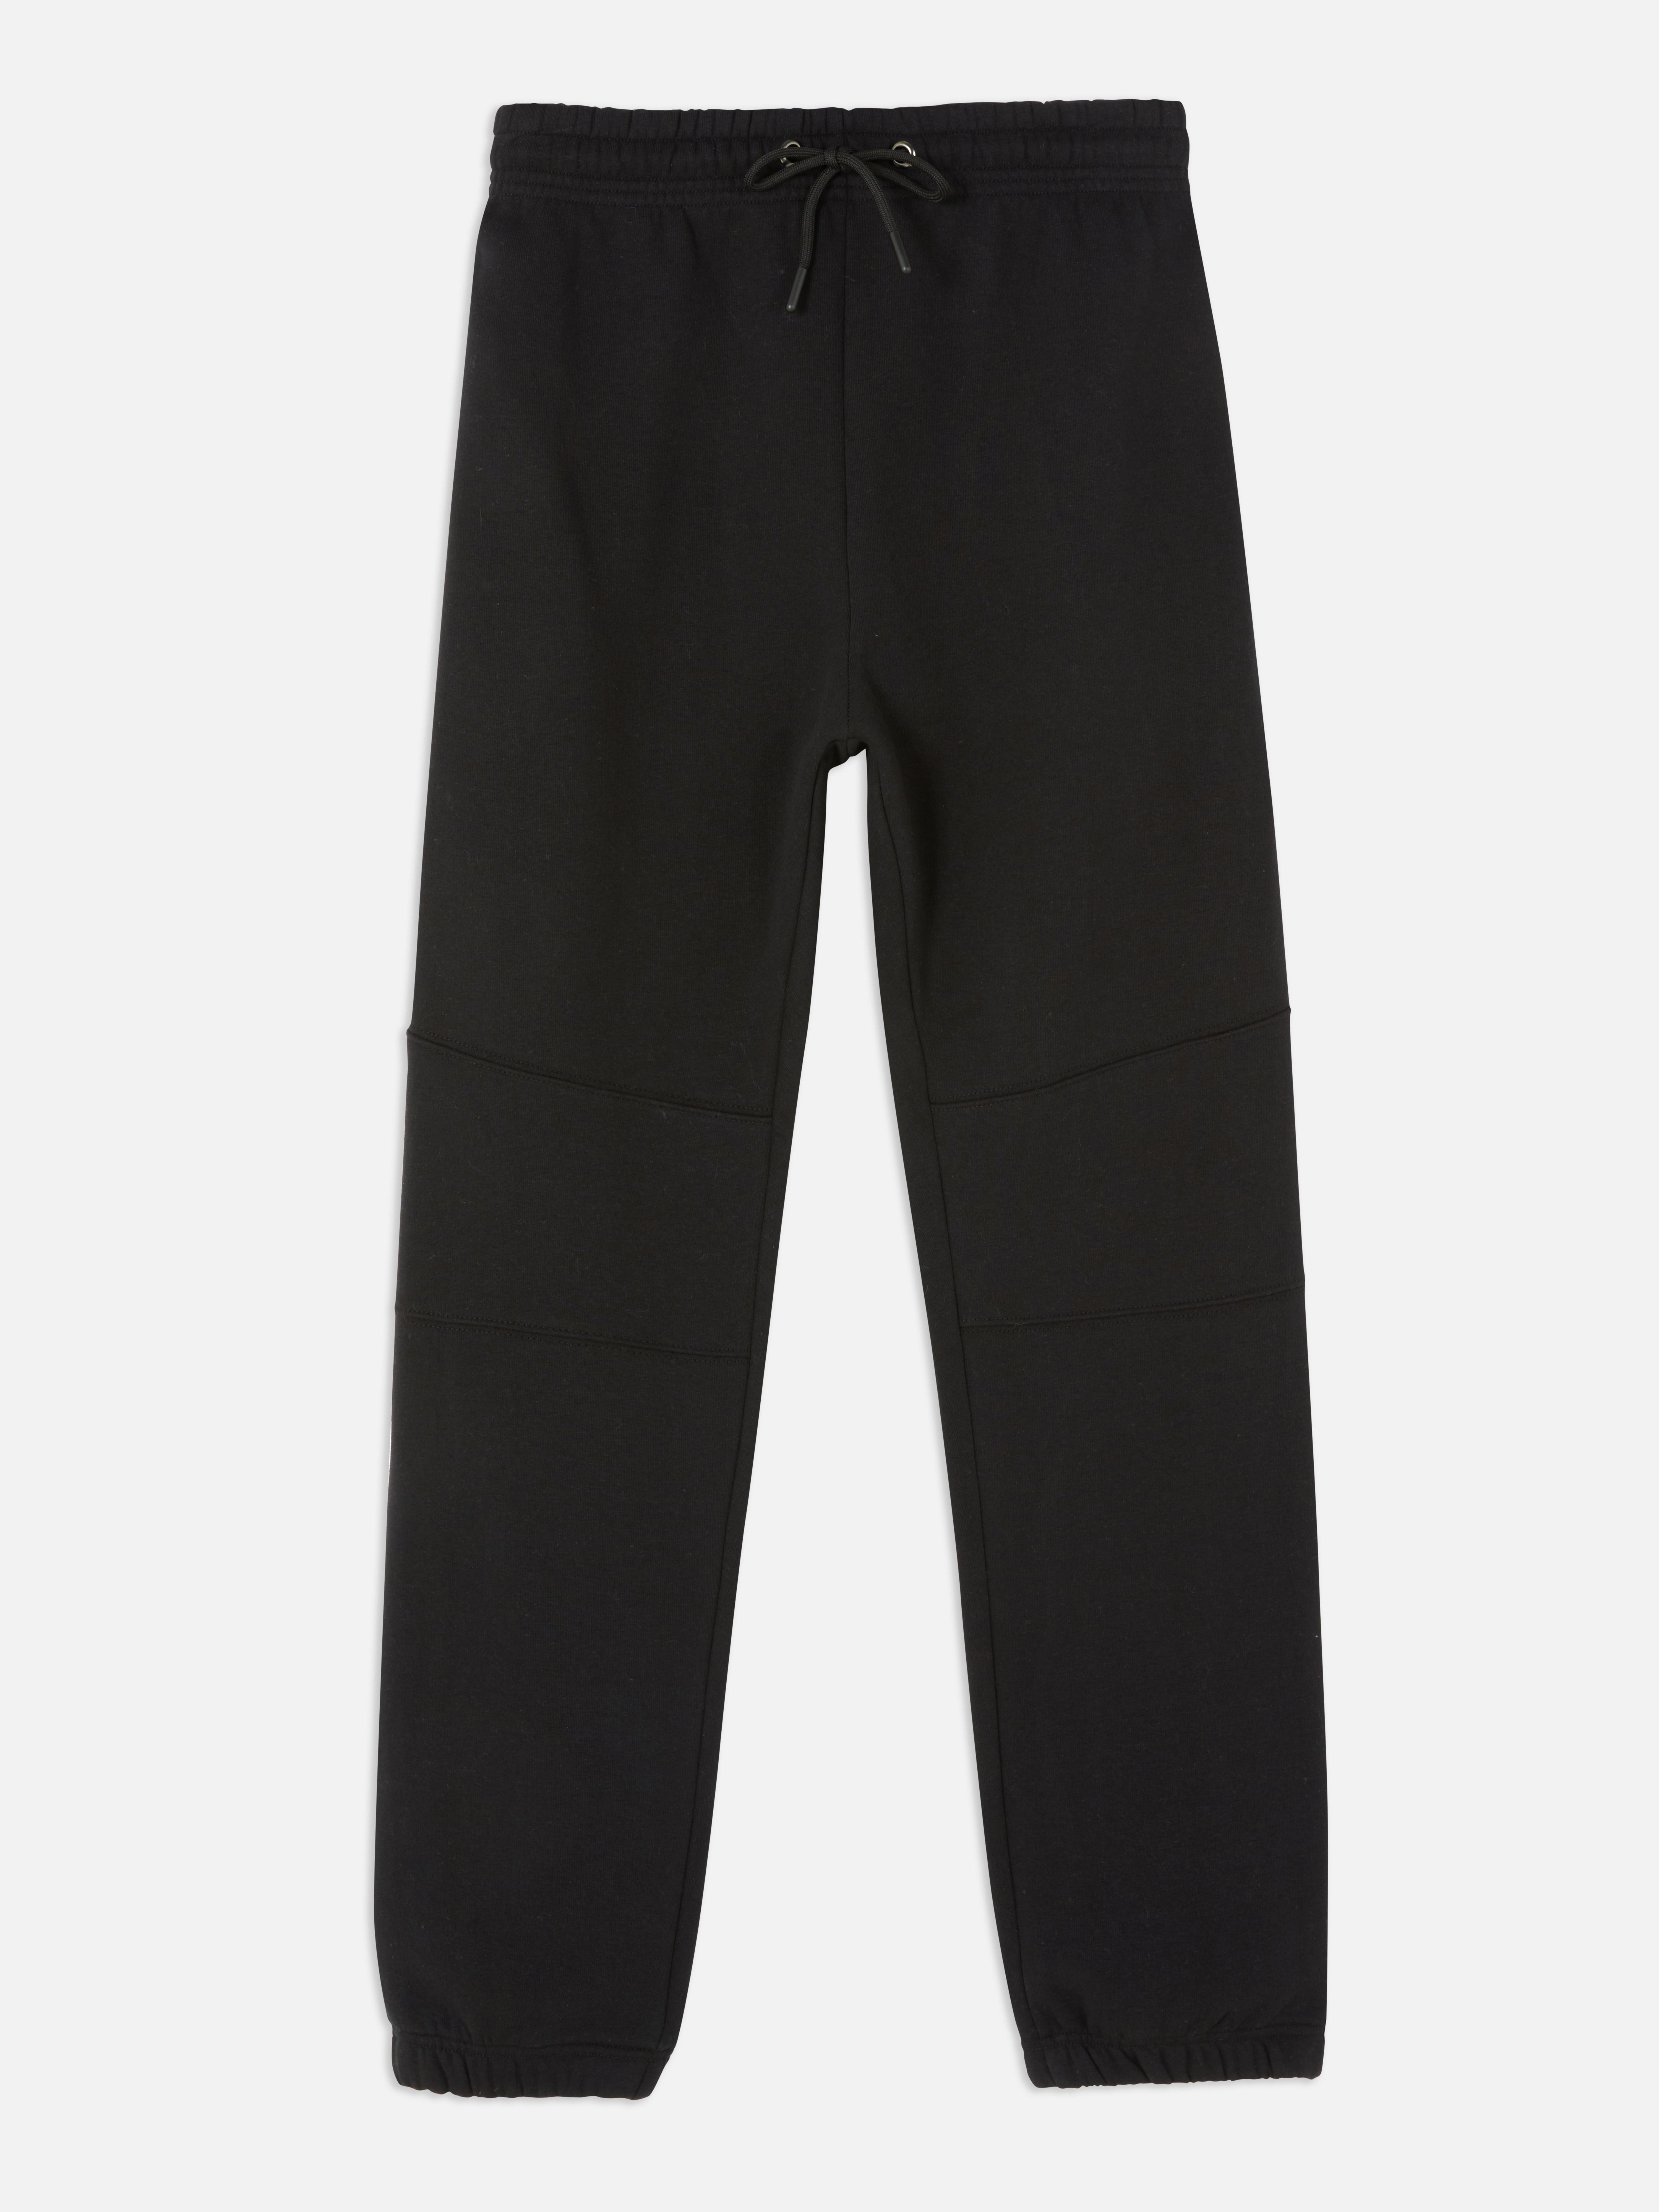 Pantalón de chándal | Pantalones chándal para hombre | Ropa para hombre | Nuestra de moda masculina | Todos los productos Primark | Primark España